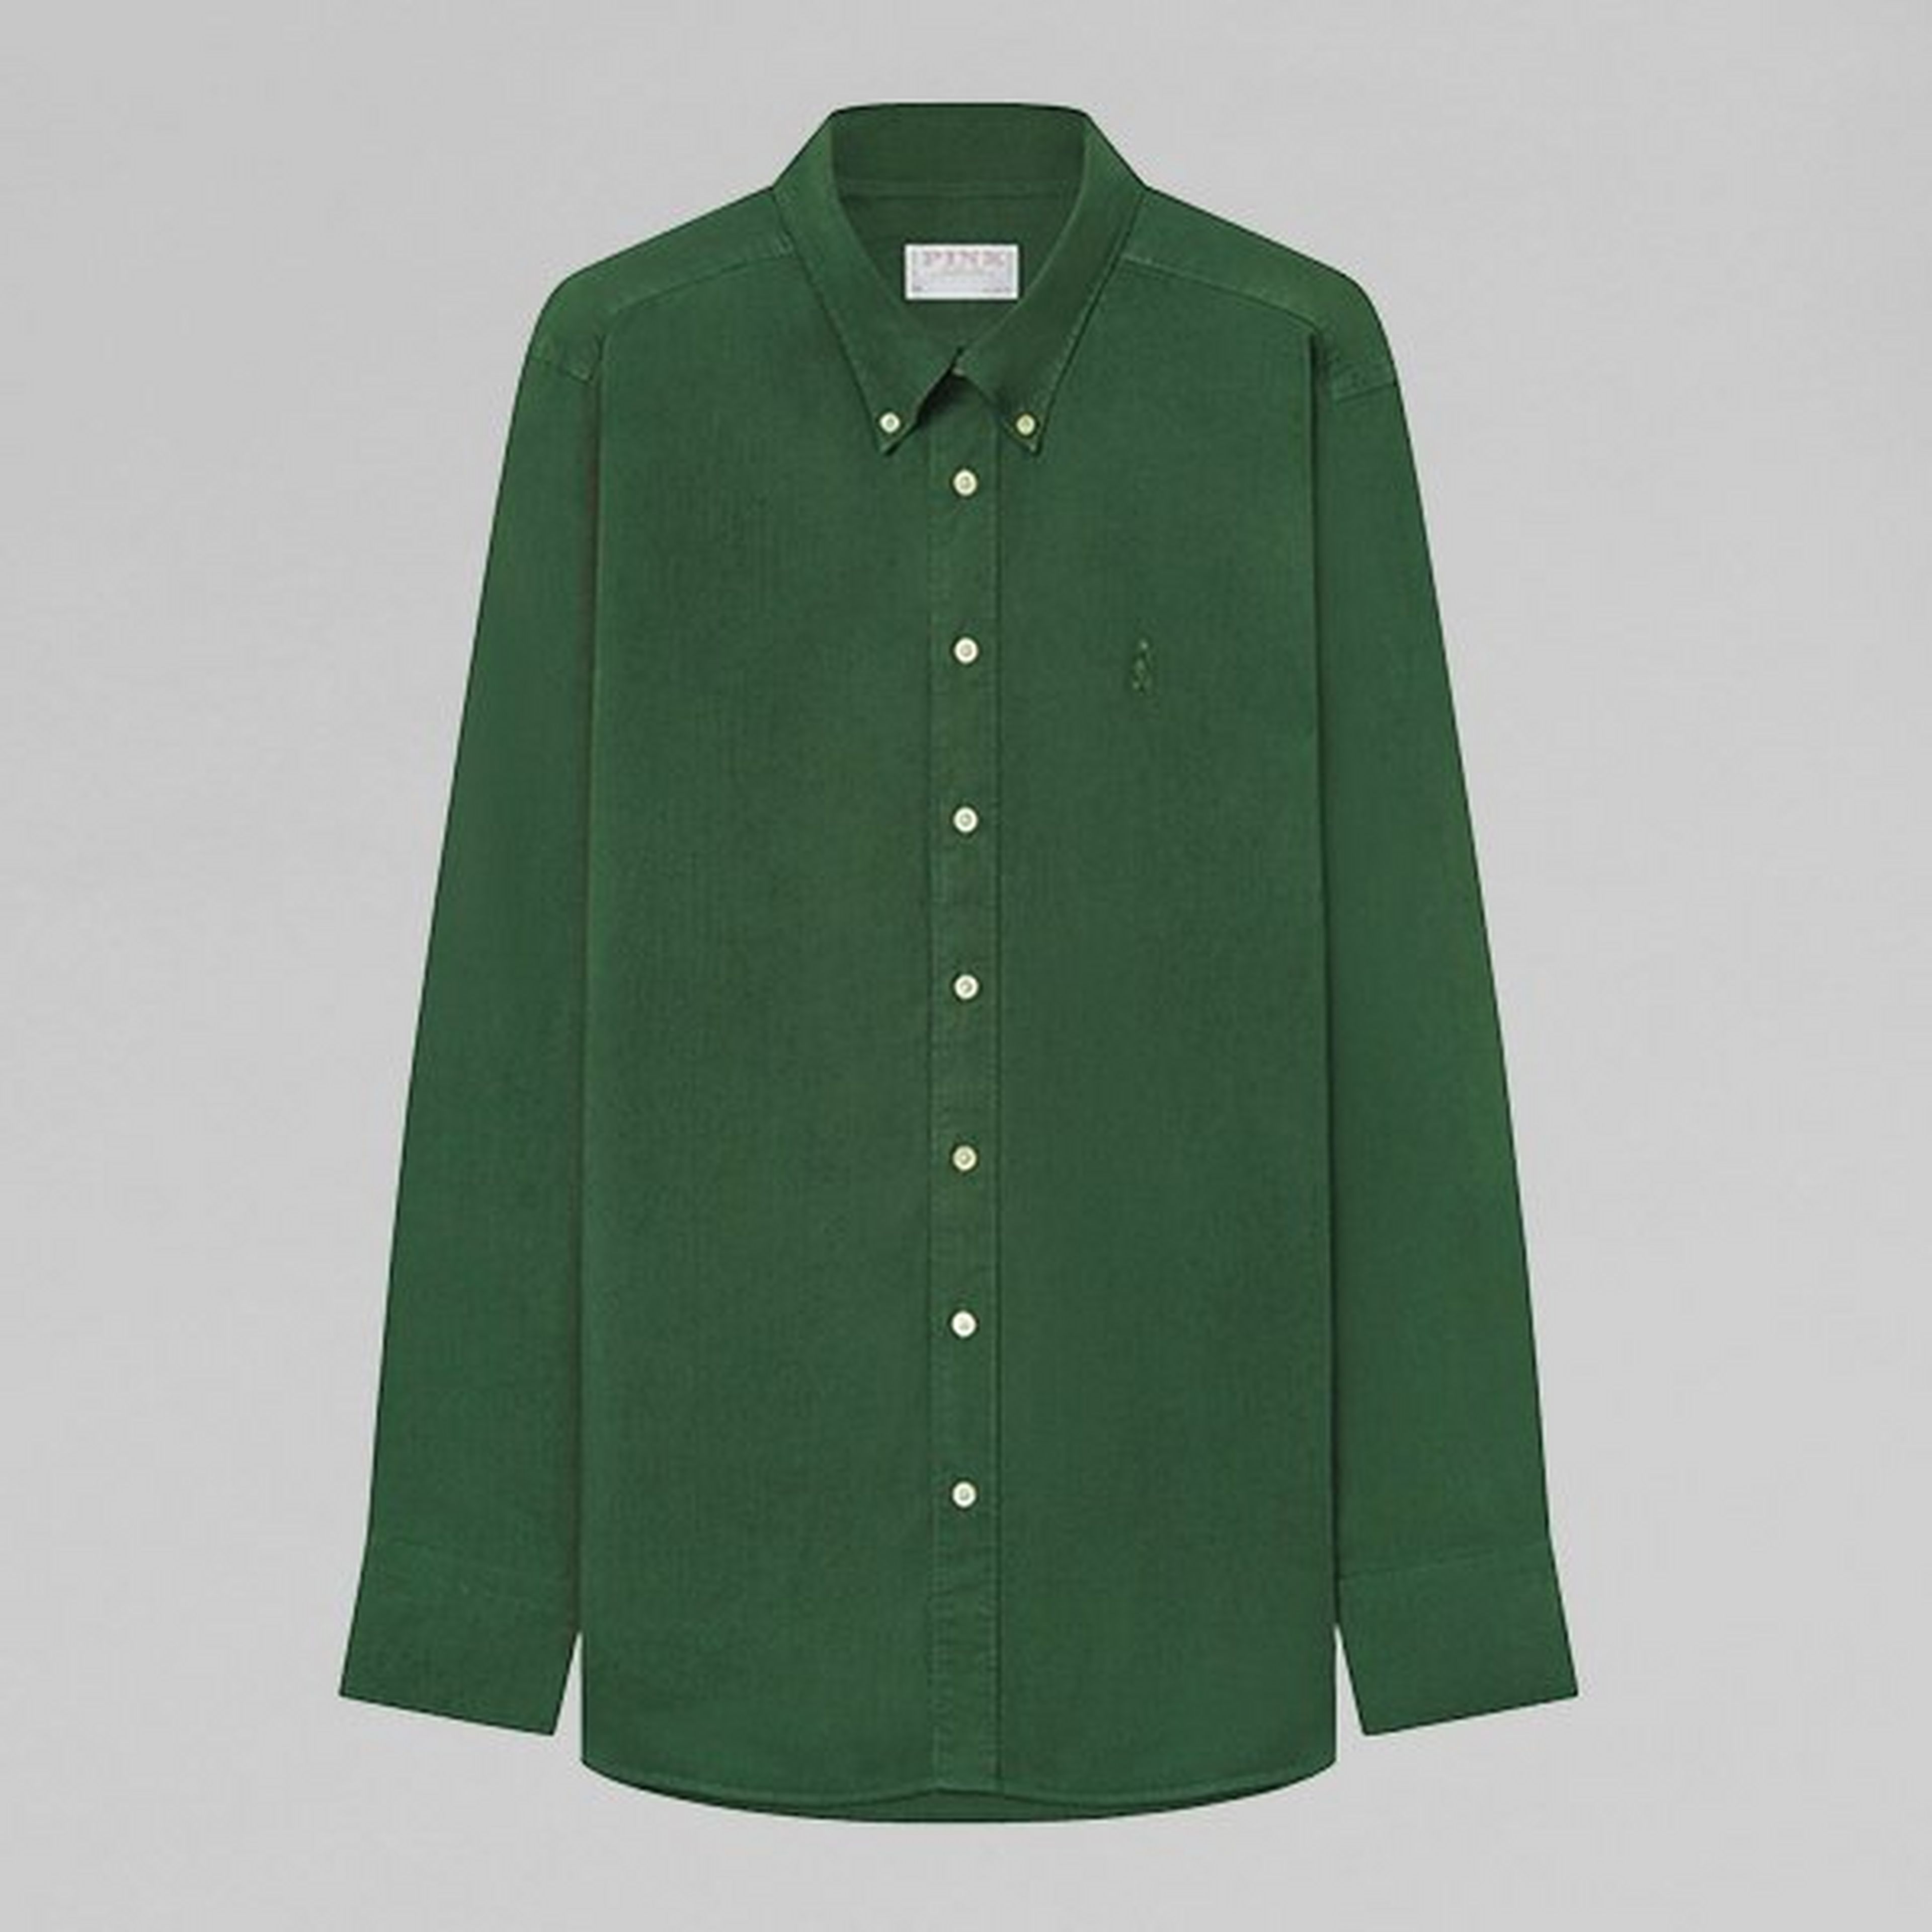 Bottle Green Smart Casual Cotton Linen Dyed Shirt